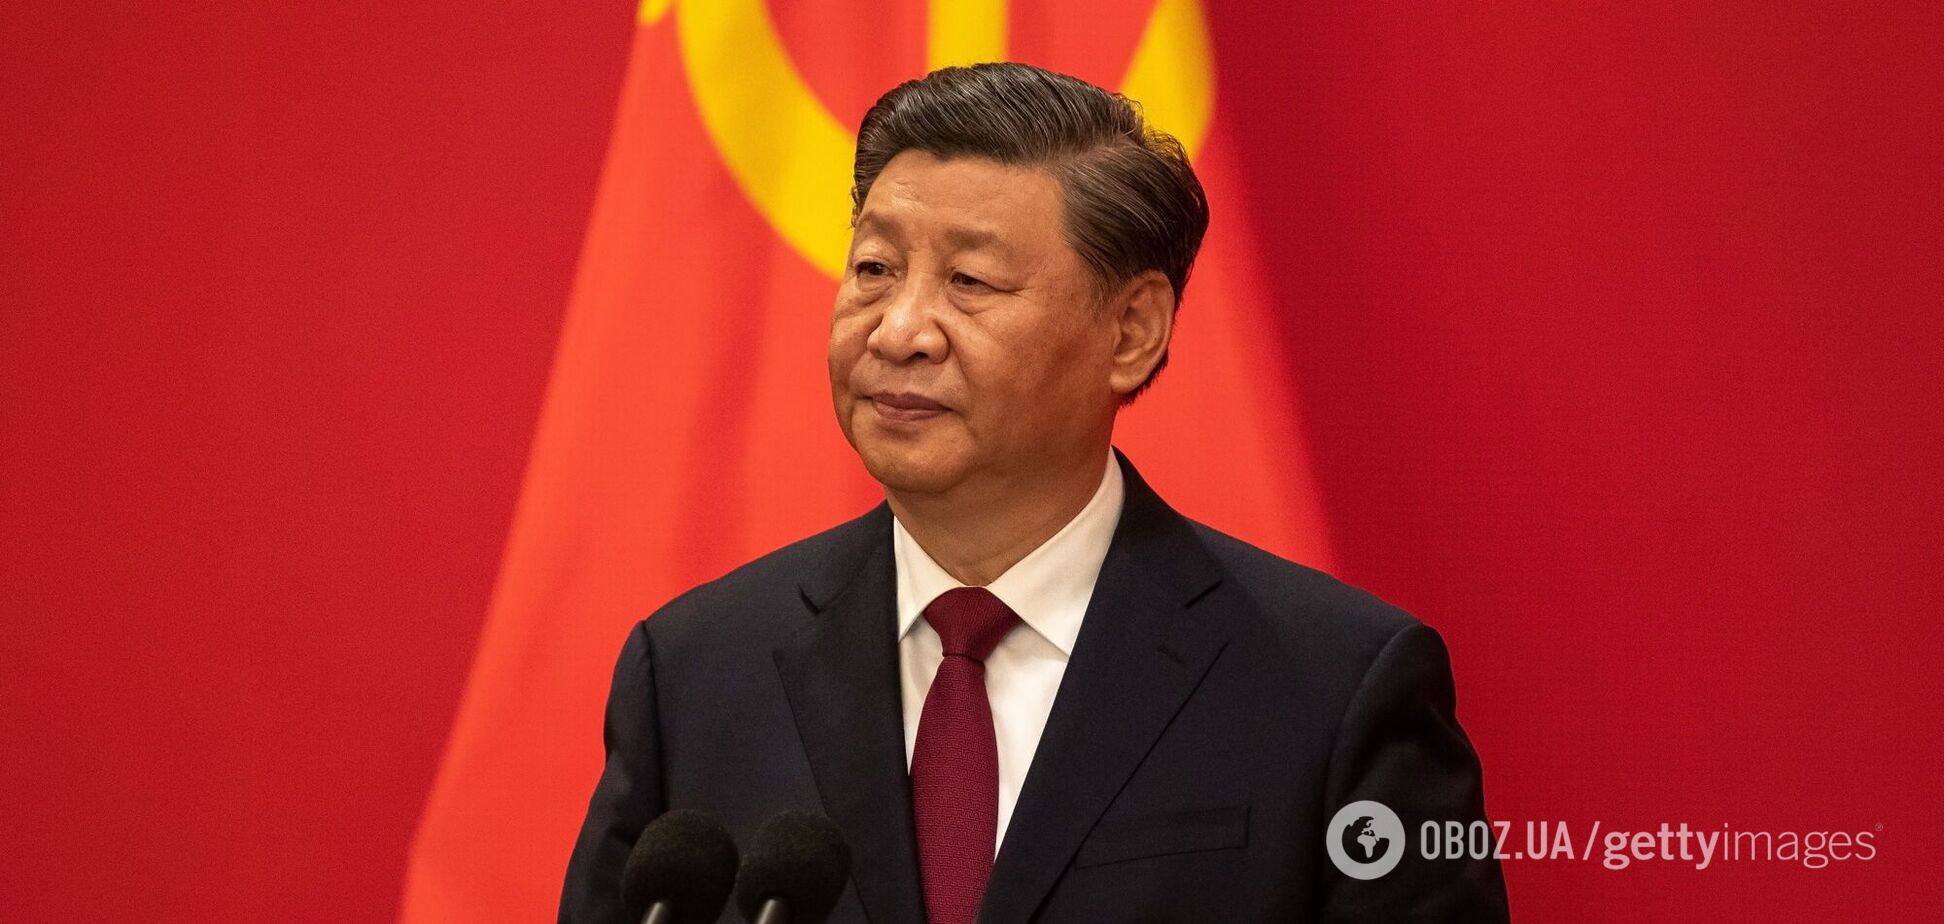 Китай 'раскачивает' Европу через пророссийское 'окно': что стоит за визитом лидера КНР в Венгрию и Сербию